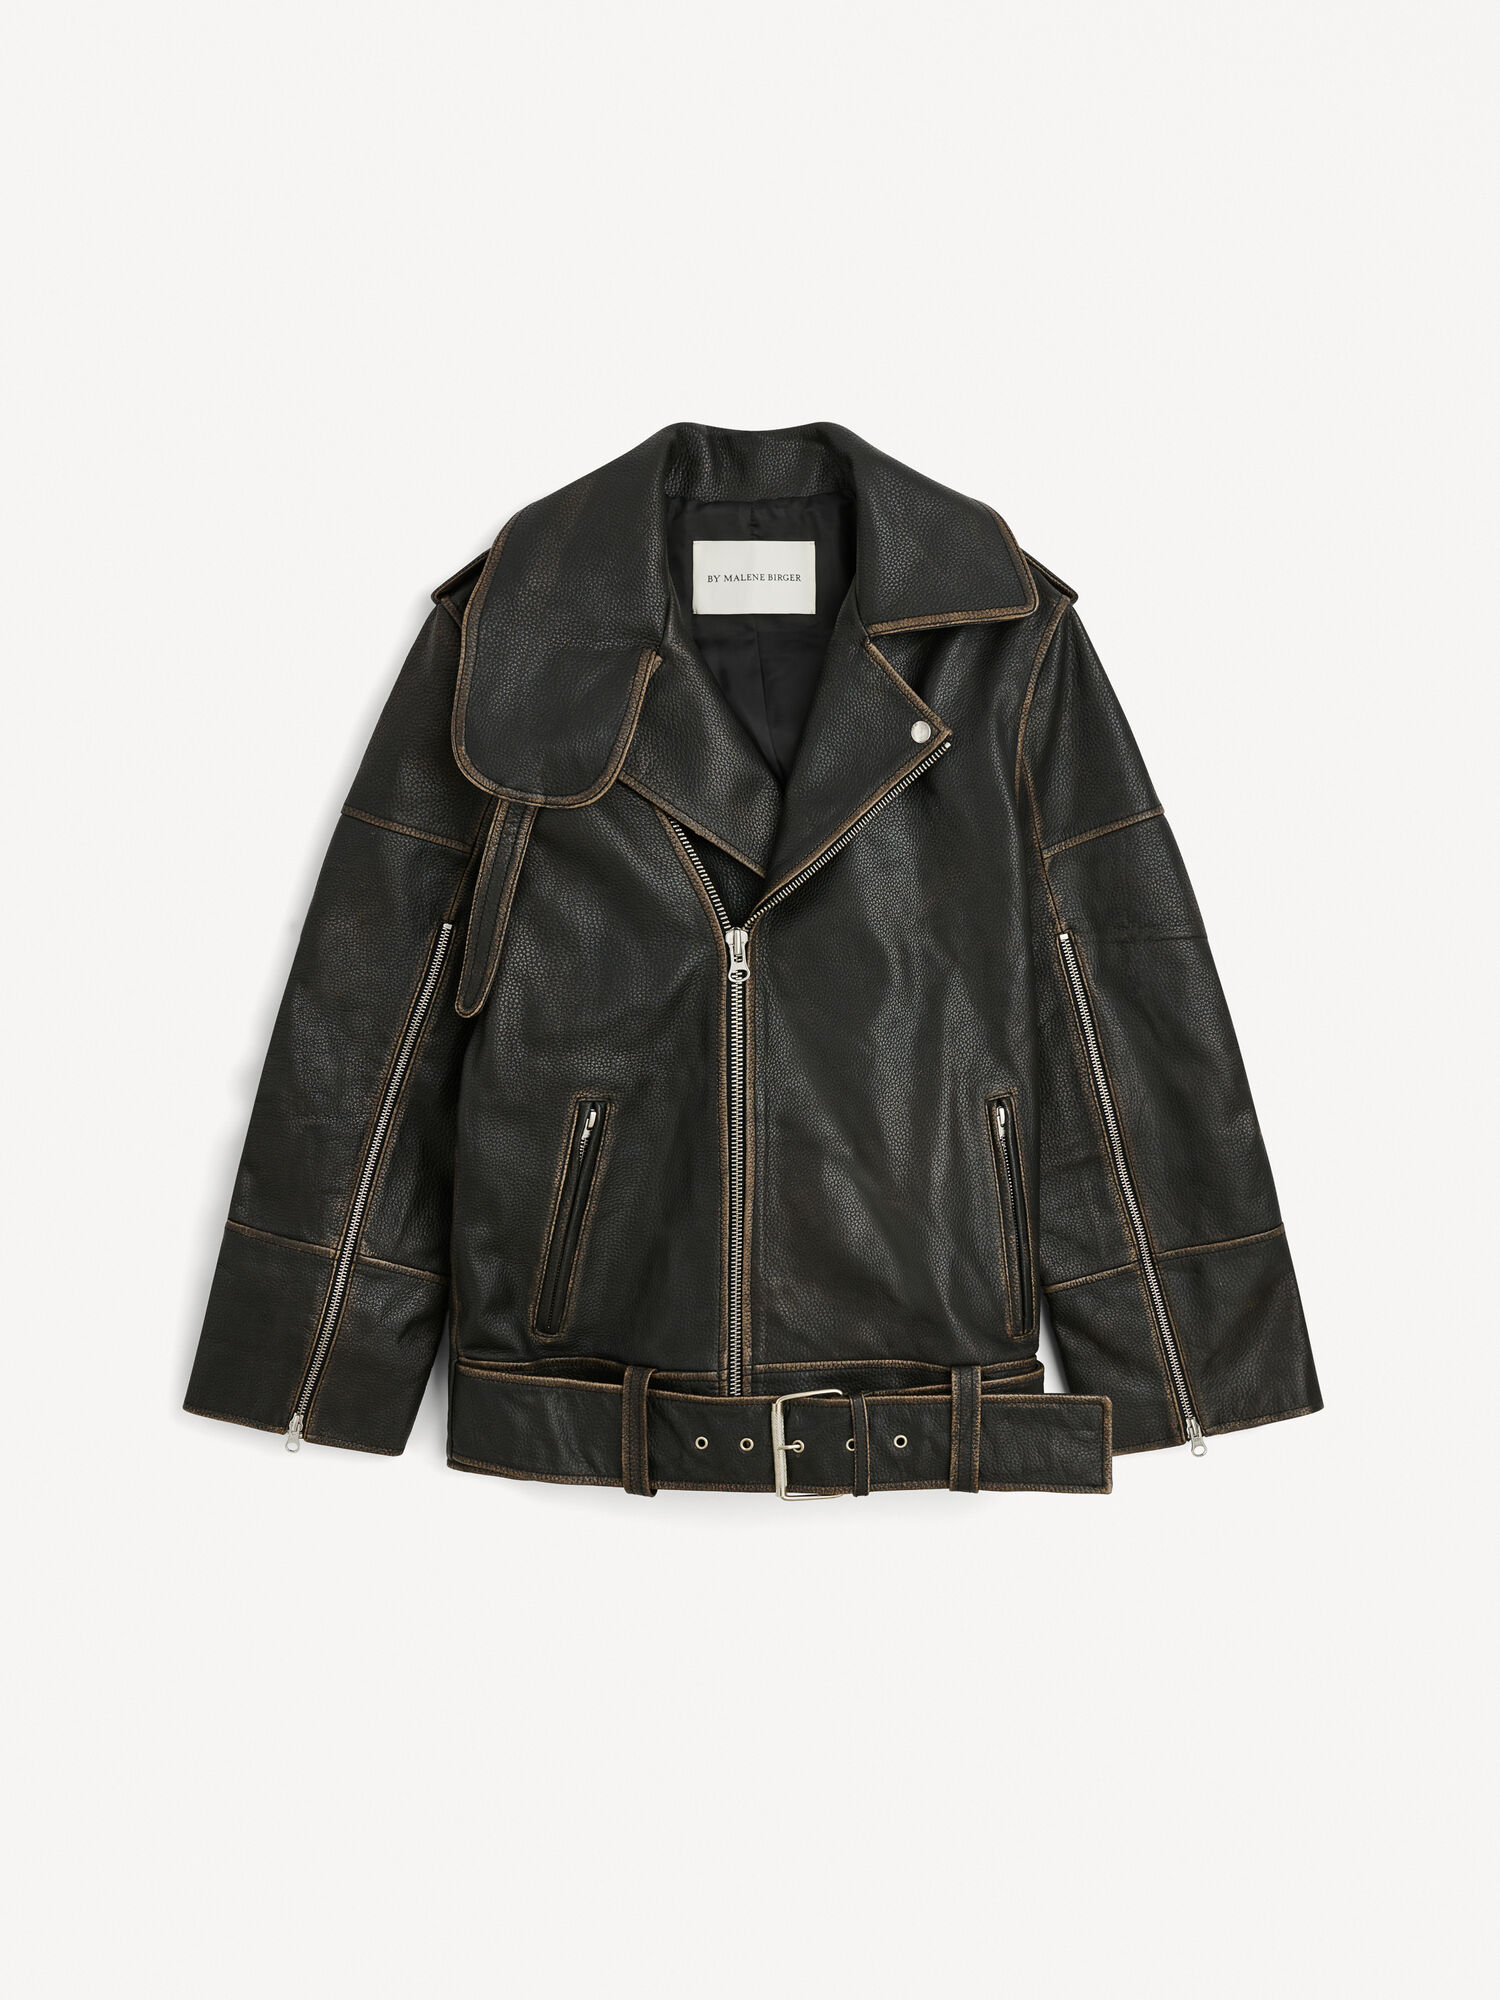 Beatrisse leather jacket